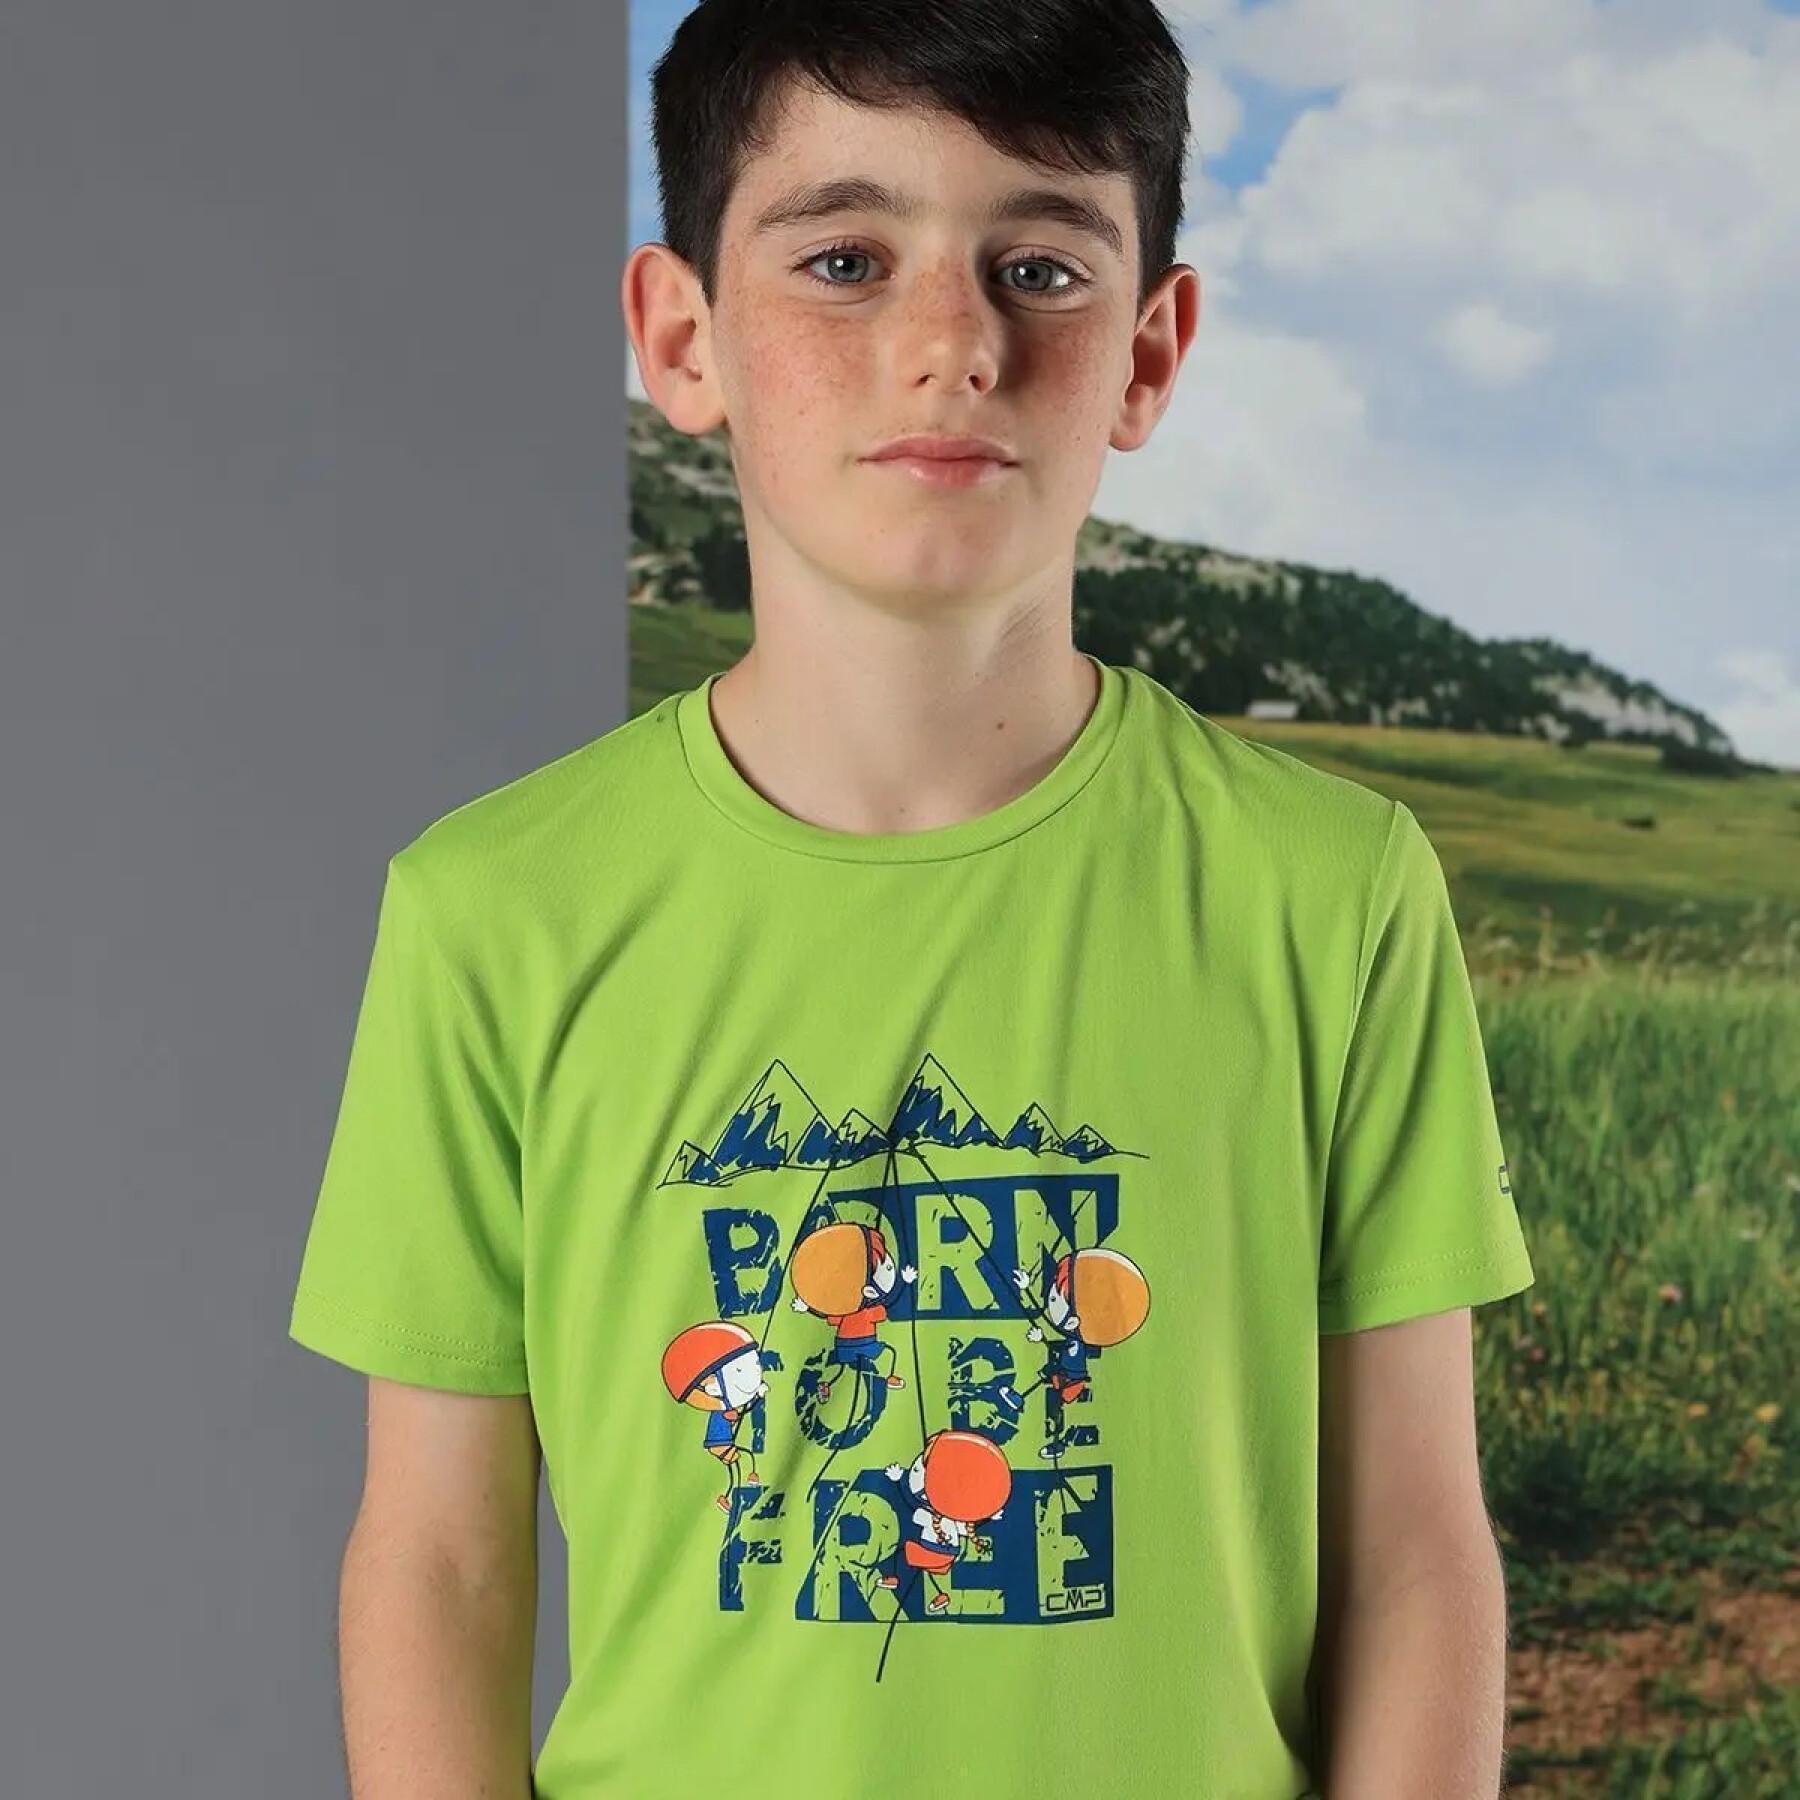 T-shirt polyester enfant CMP